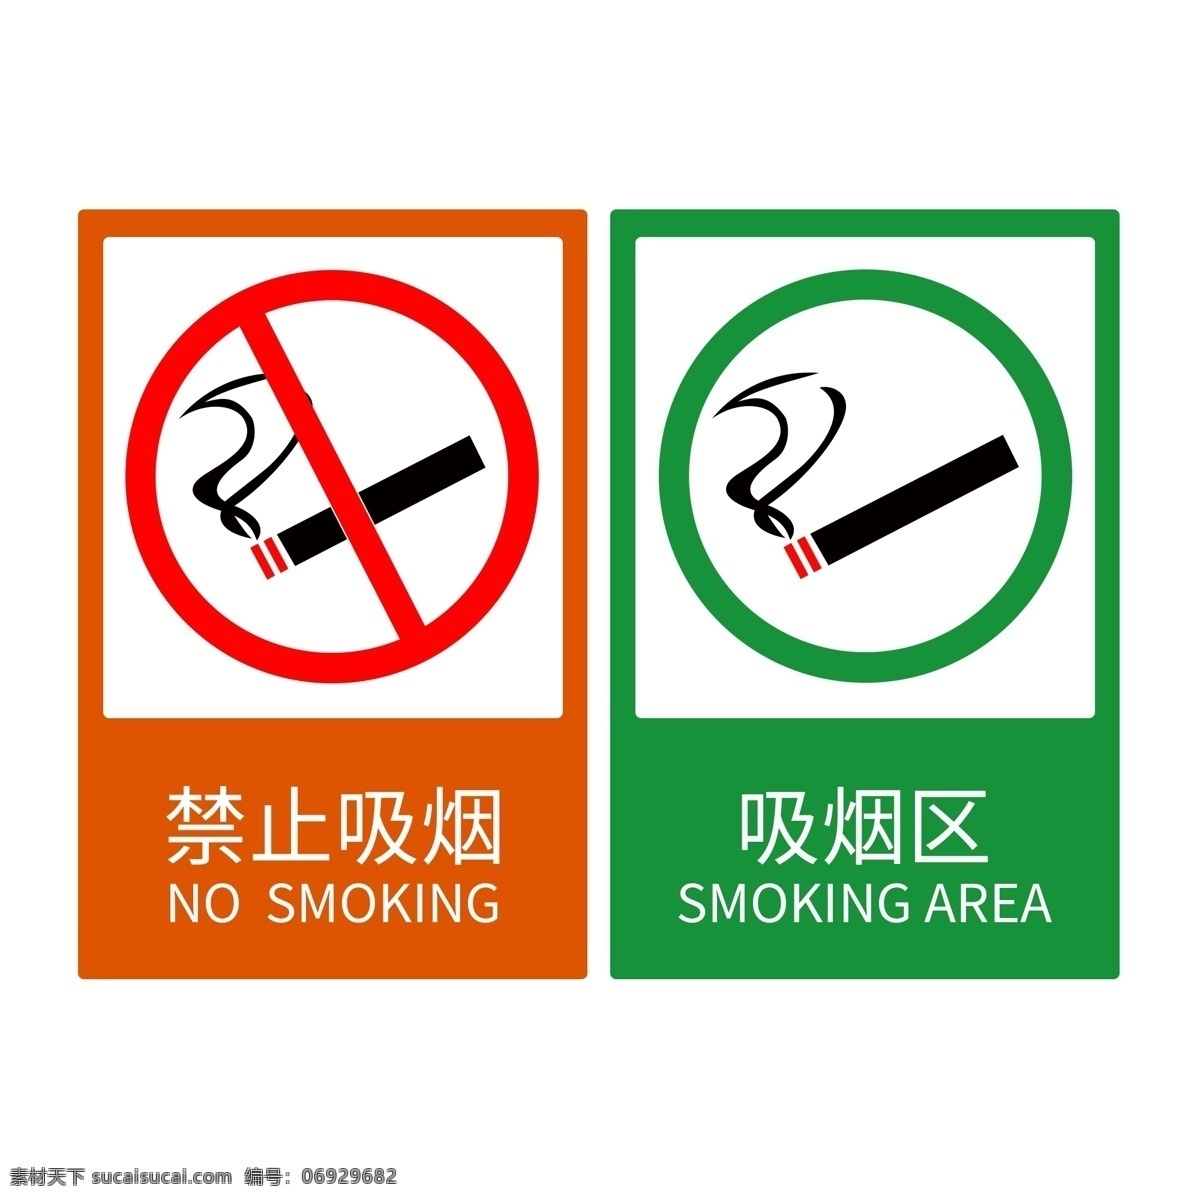 禁止 吸烟 吸烟区 标识 禁烟 烟草 标牌 标识牌 禁止吸烟 温馨提示 请勿吸烟 禁烟标识 禁烟标志 吸烟有害健康